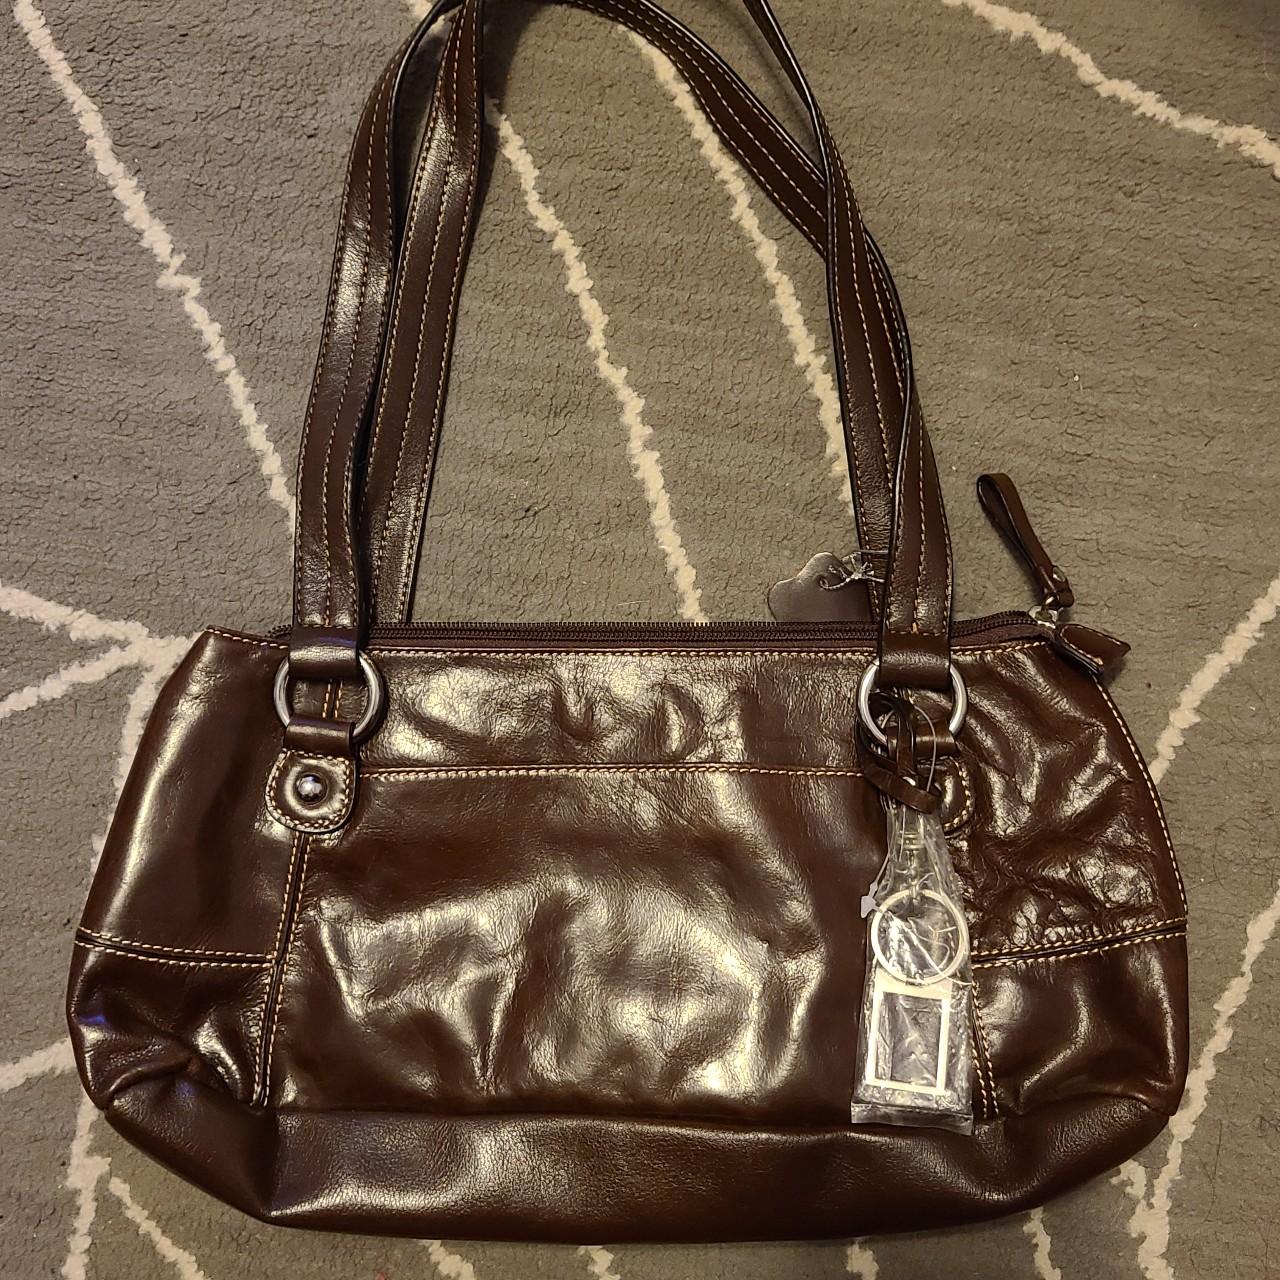 Giani Bernini brown leather purse. NWOT!! All